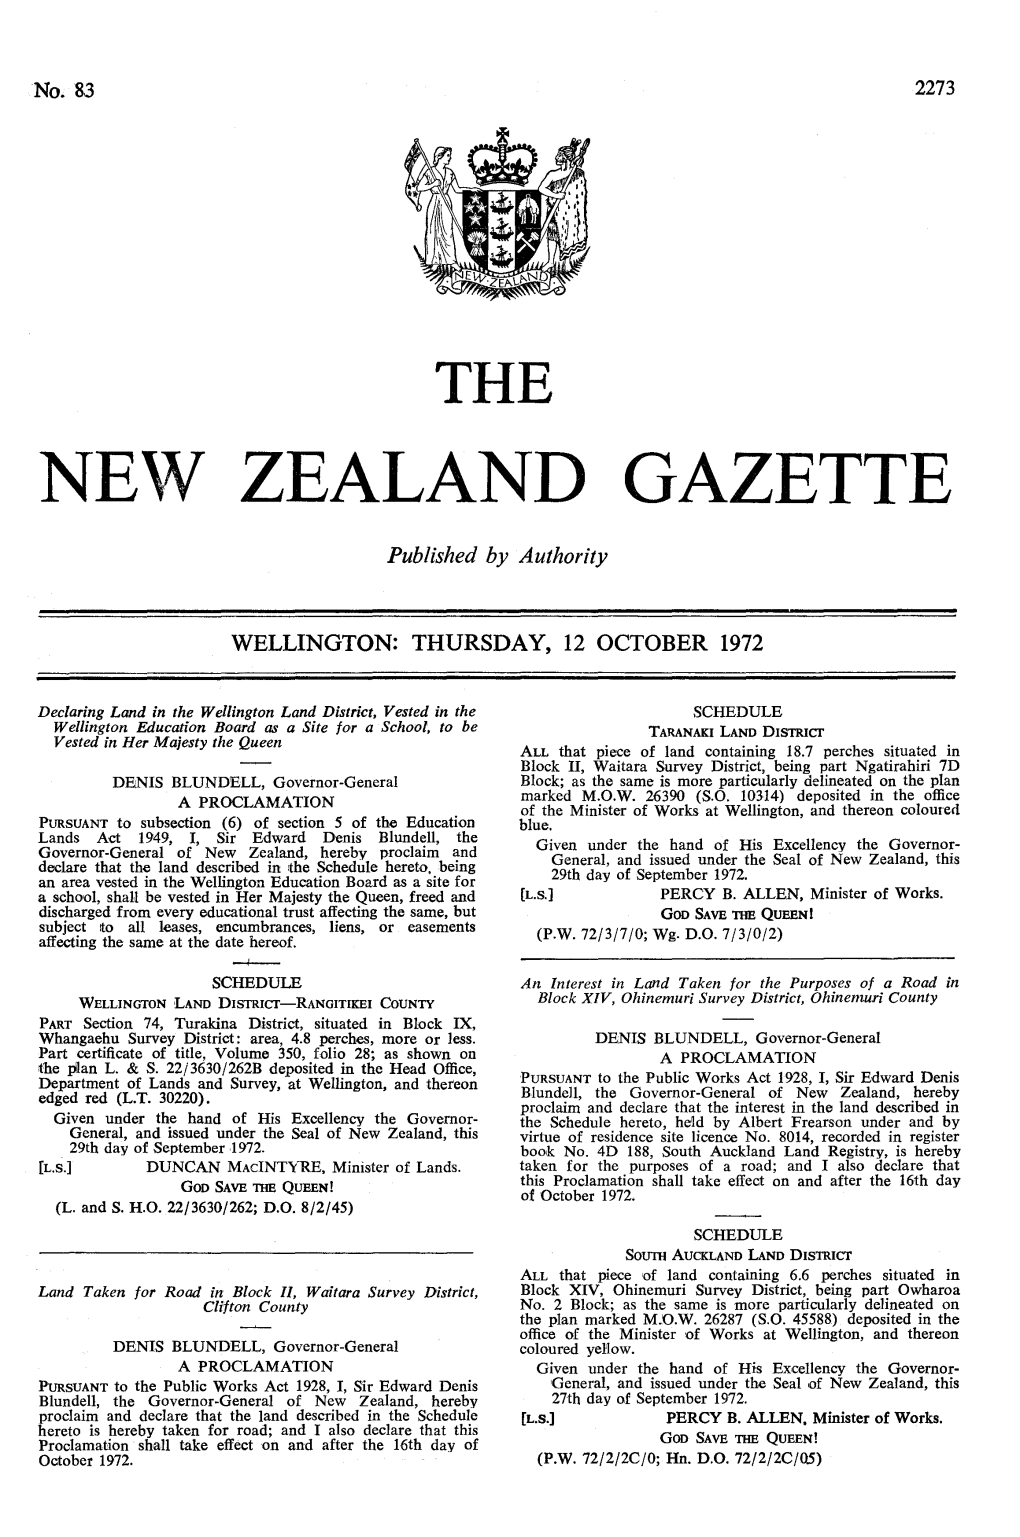 No 83, 12 October 1972, 2273